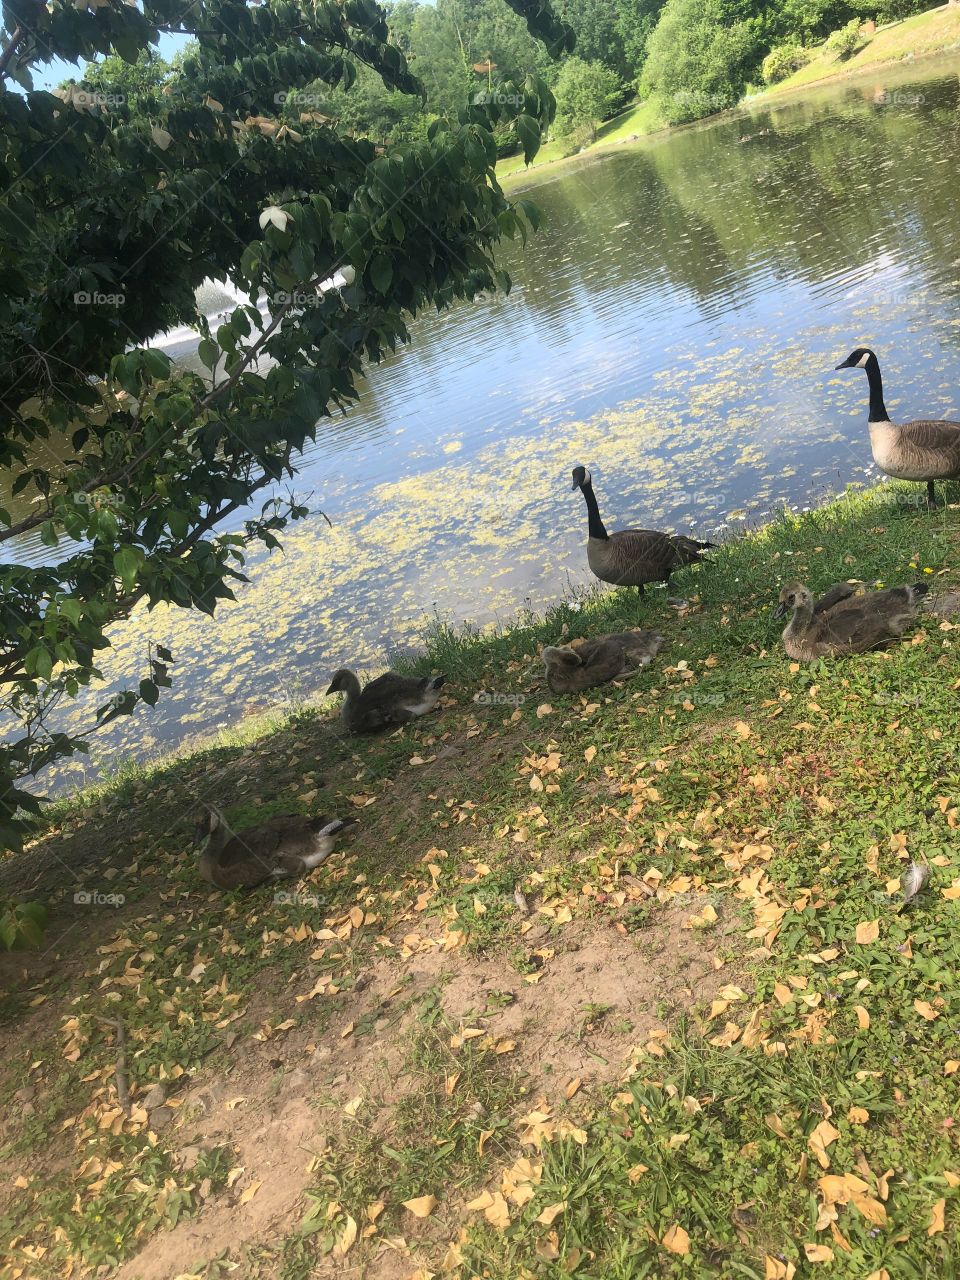 Ducks spending family time!